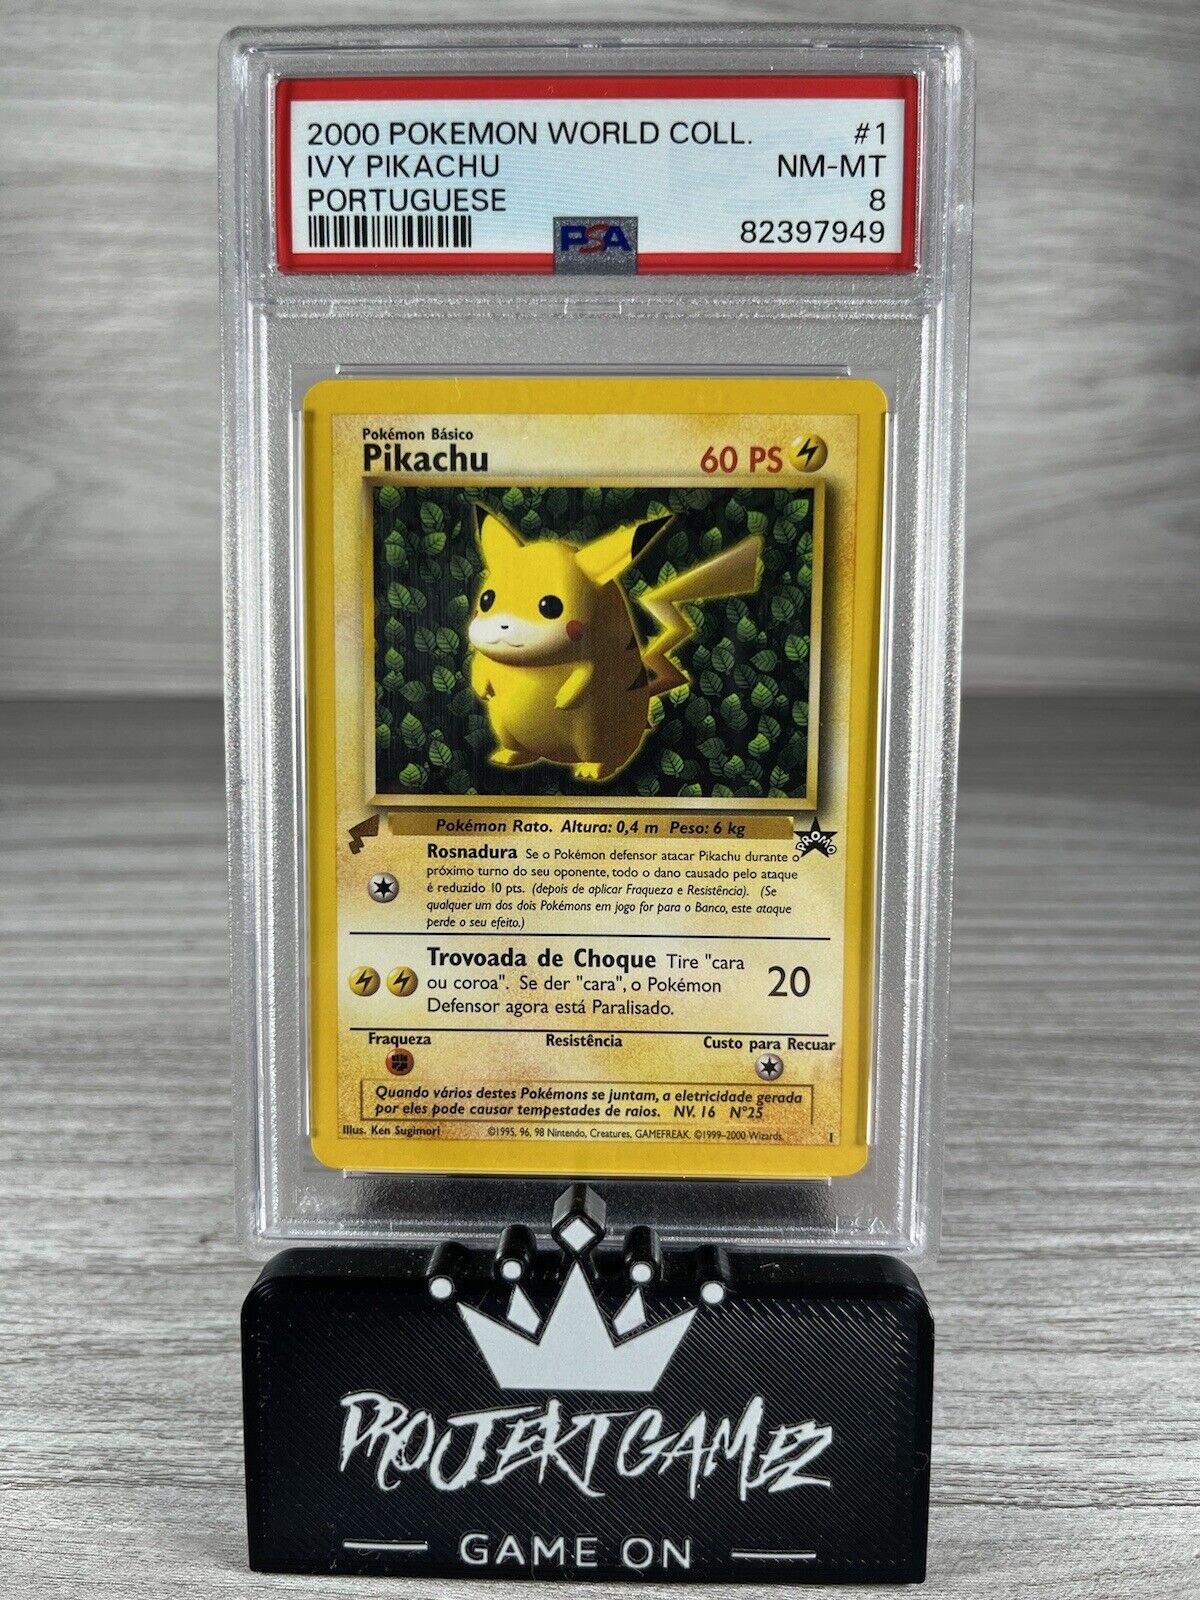 Ivy Pikachu 1 PSA 8 Portuguese World Collection 2000 Pokémon Promo Card